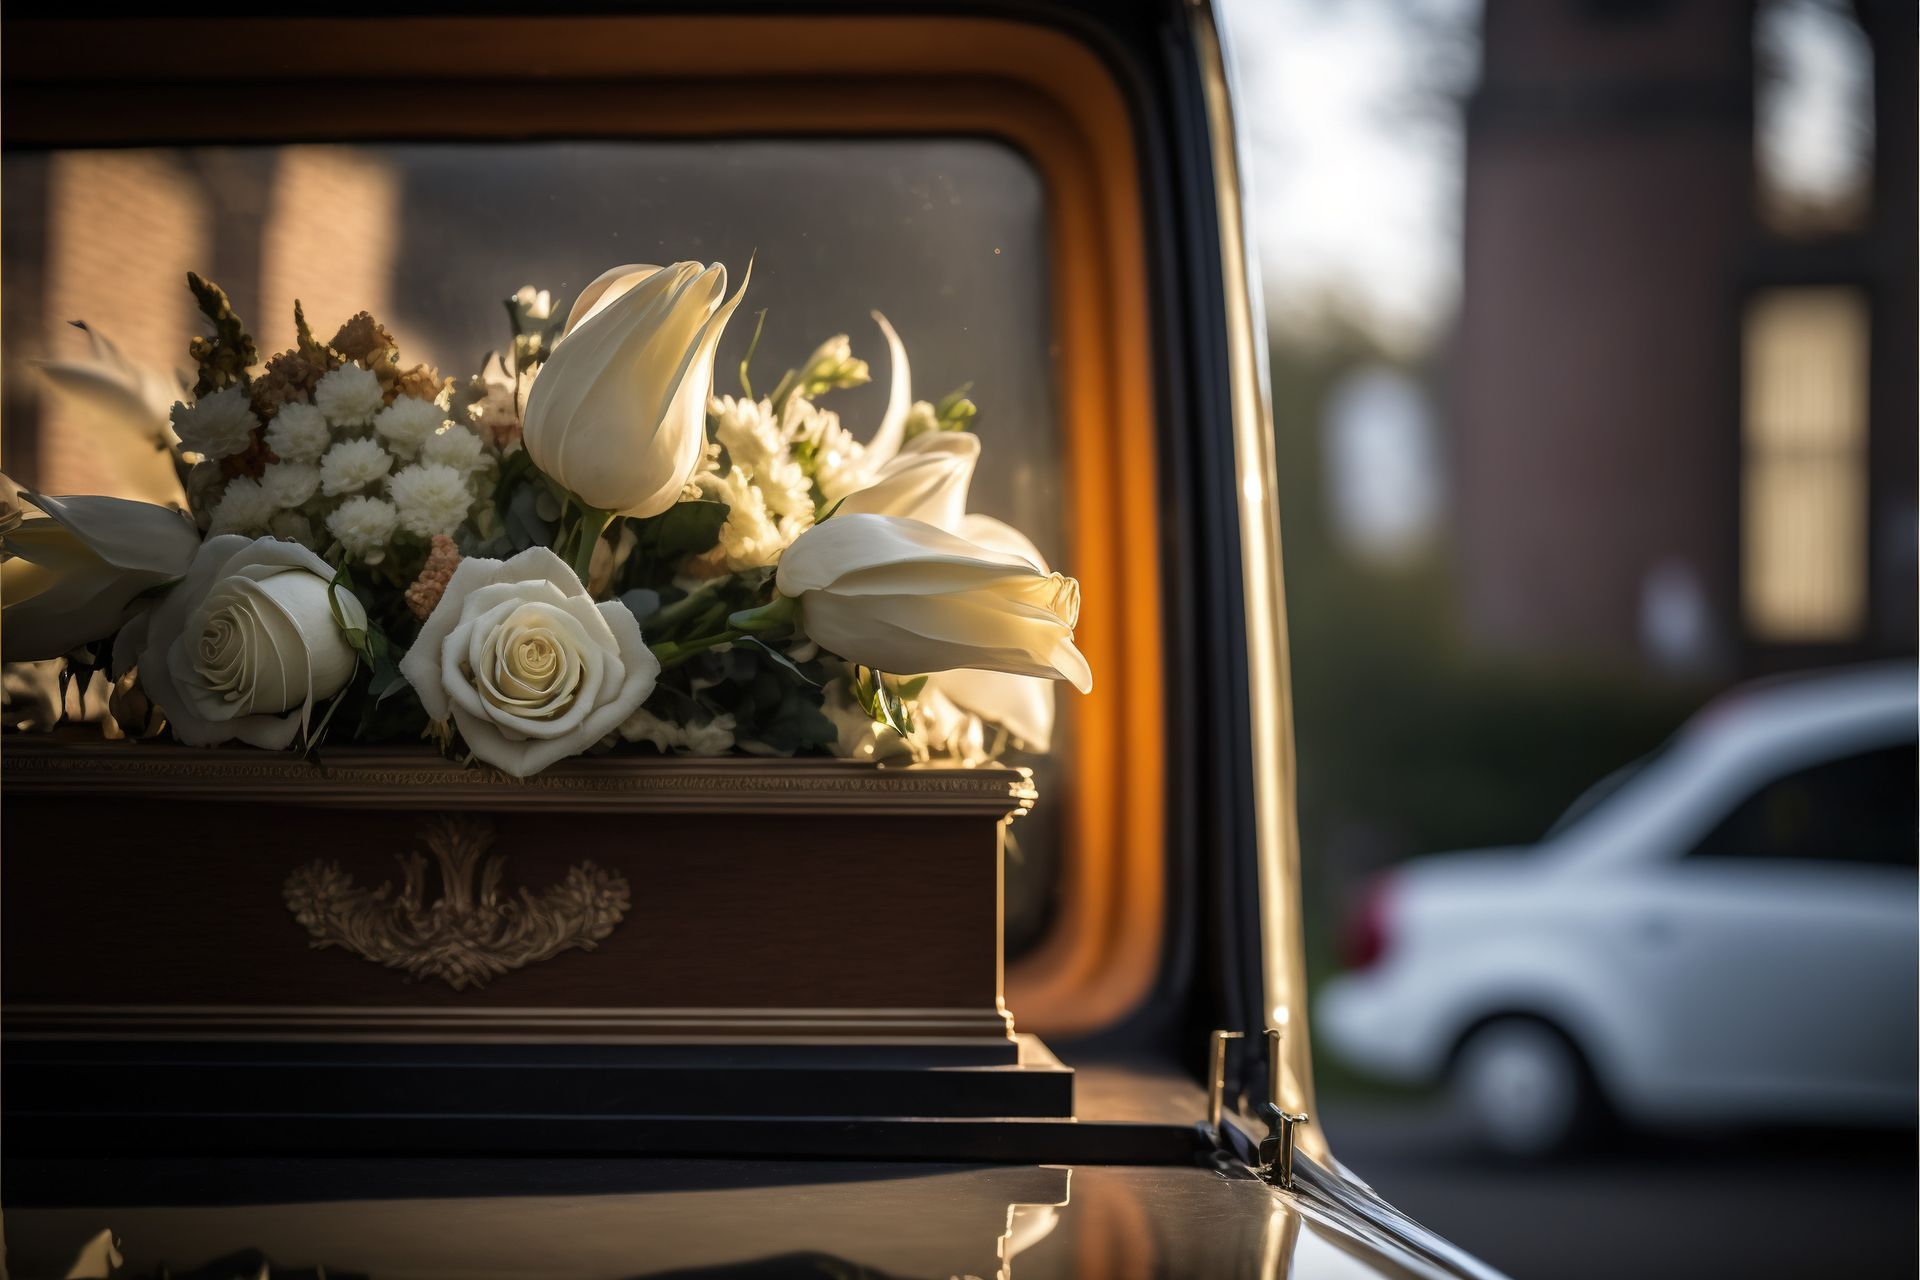 Des fleurs reposent sur un cercueil dans une voiture